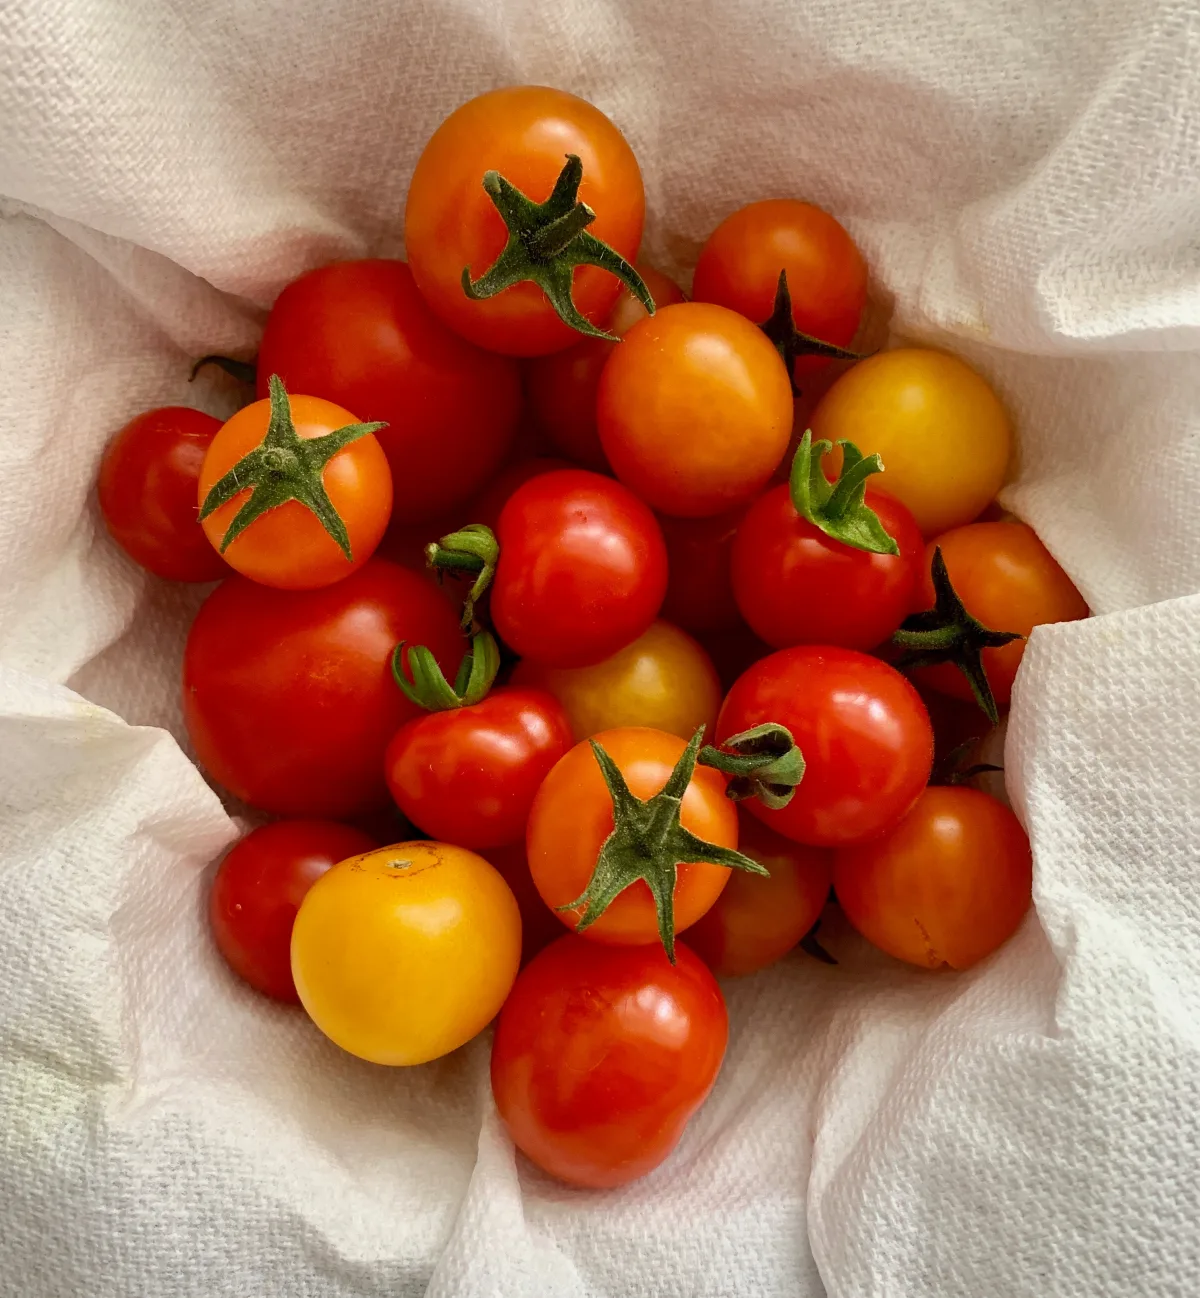 les meilleures variétés de tomates à semer et planter dans son jaridn ou en conteneur